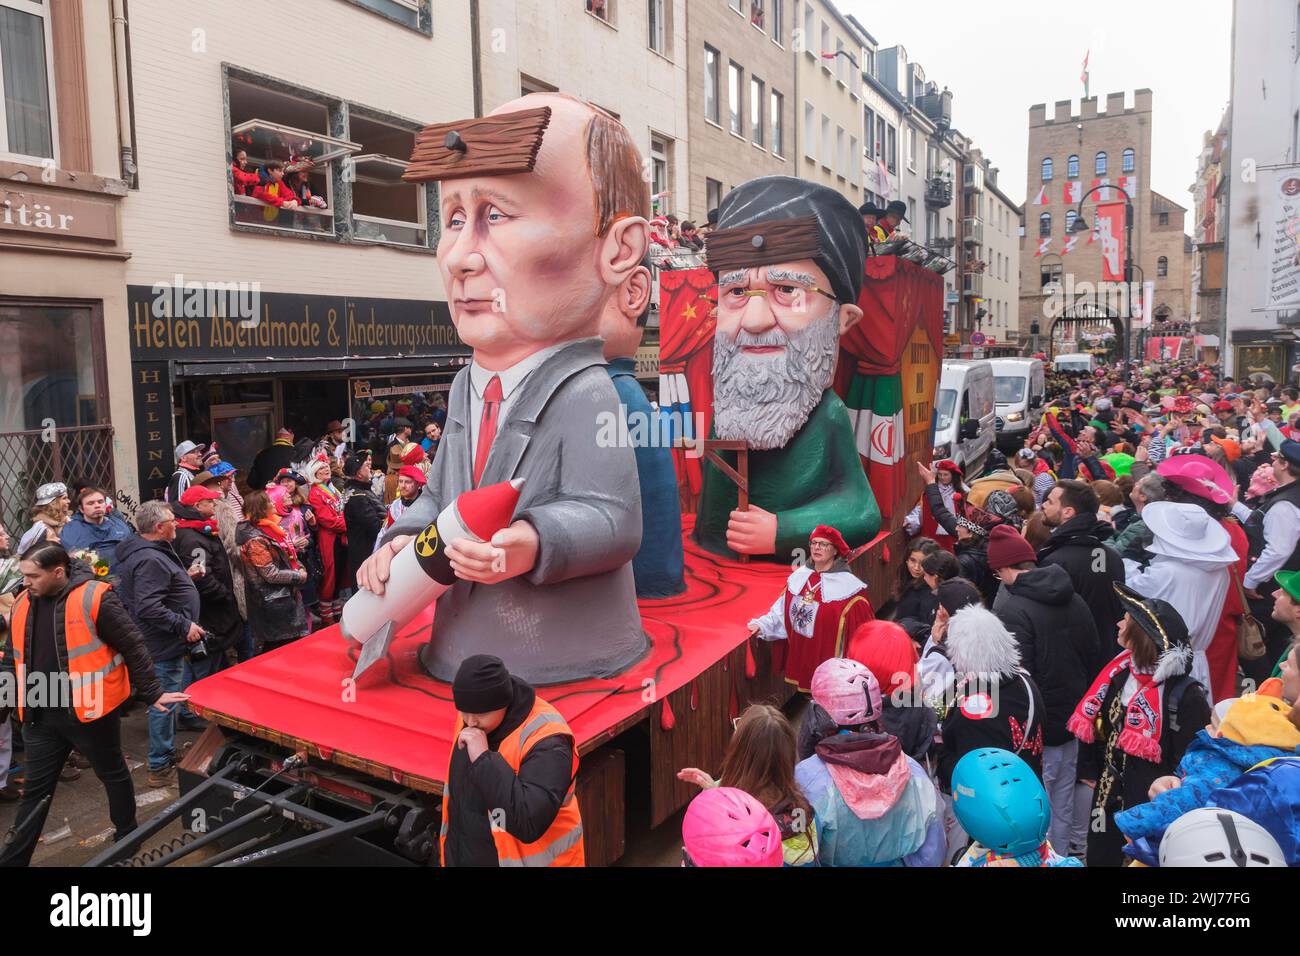 Karneval, Rosenmontag a Köln. Ein Wagen mit dem russischen Präsidenten Wladimir Putin mit einer Rakete in der Hand und einem Brett vor dem Kopf, suggerimento Foto Stock